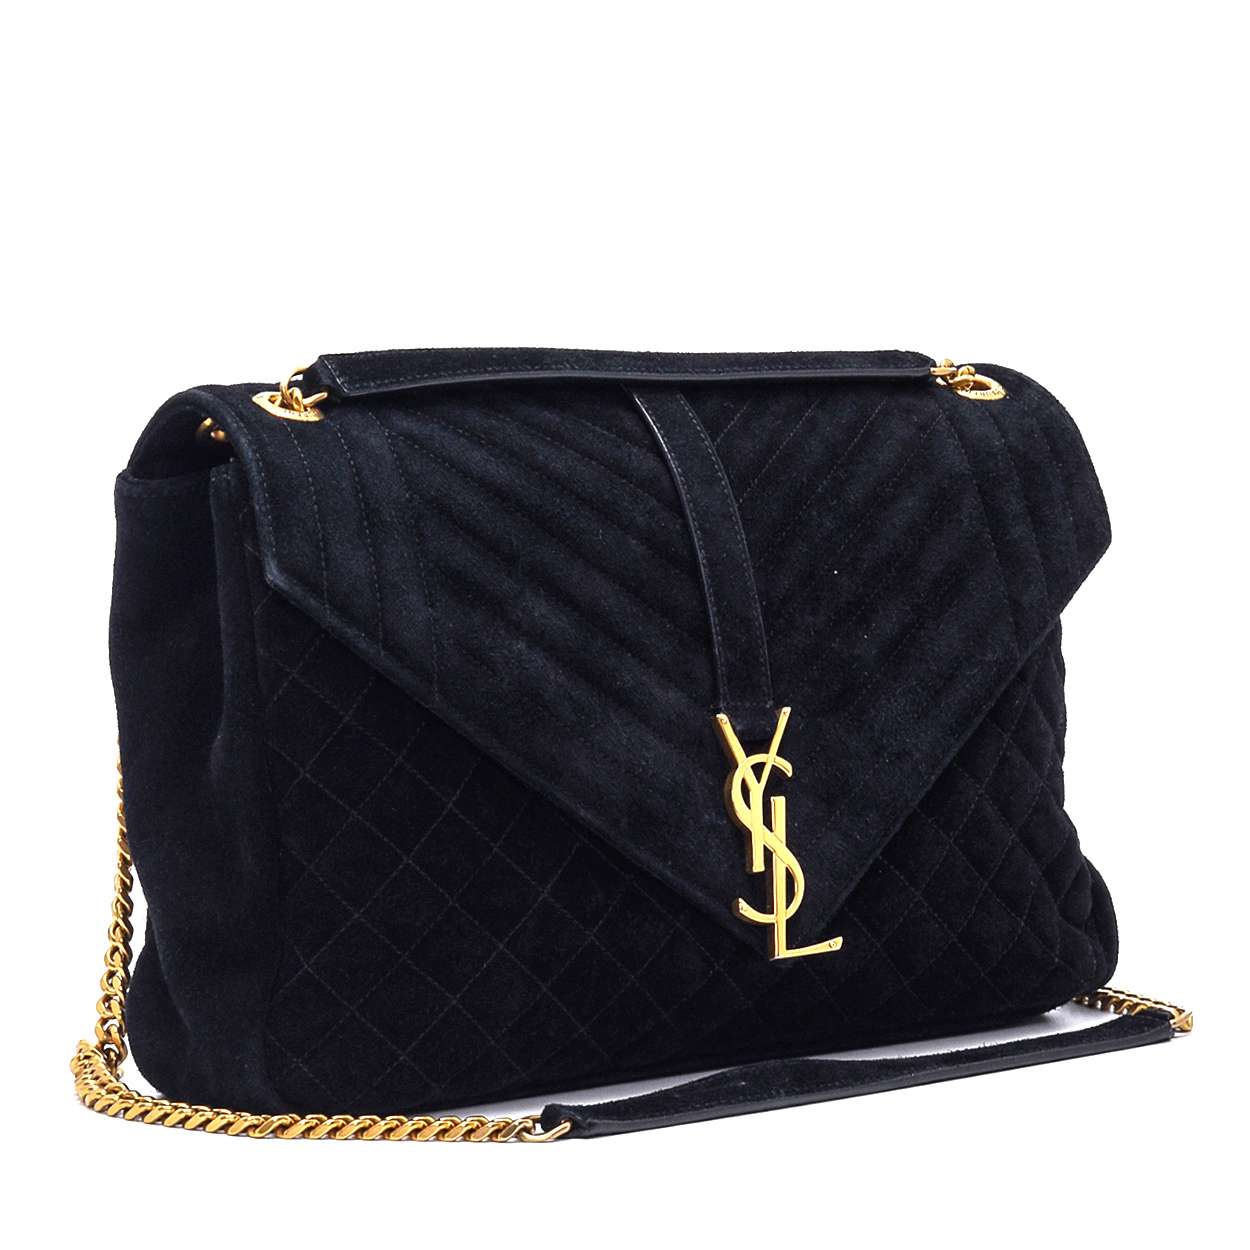 Yves Saint Laurent - Black Suede Medium Collage Shoulder Bag